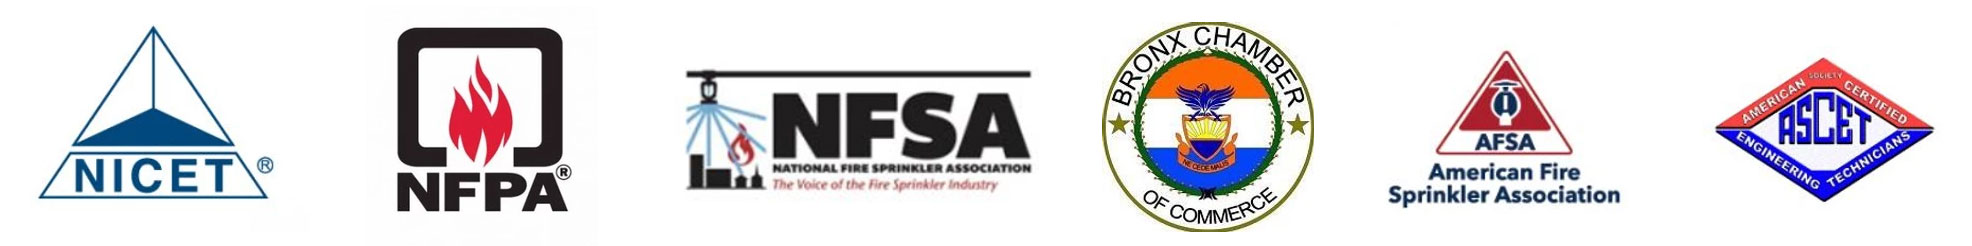 Fire Sprinkler System Design Affiliations